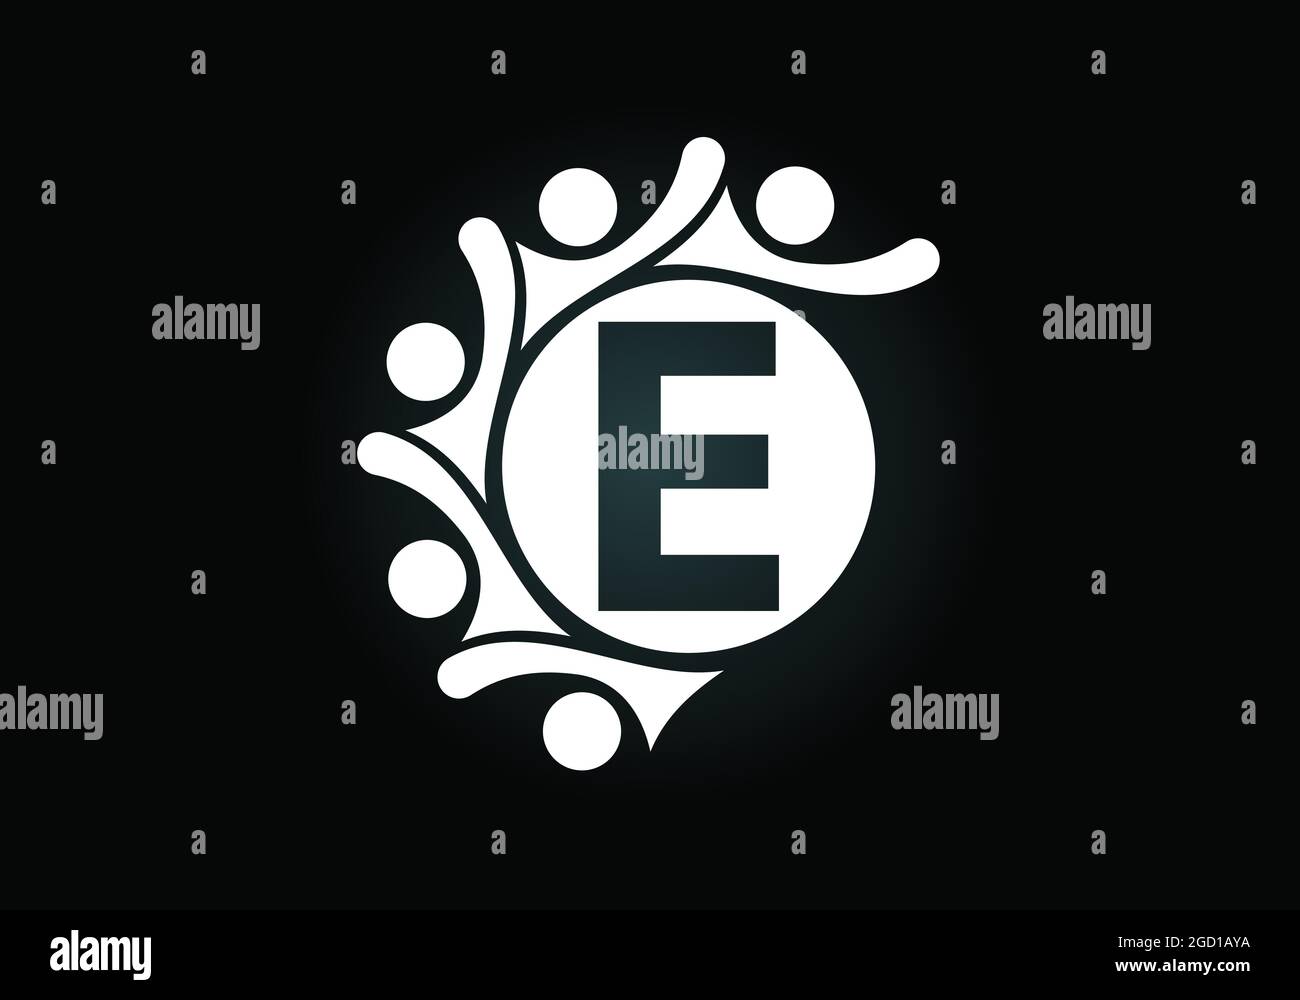 Anfängliches E-Monogramm-Alphabet mit der Verbindung von Menschen. Team, Zusammenarbeit Logo Zeichen Symbol. Schrift-Emblem. Logo für die Zusammenarbeit im Unternehmen Stock Vektor